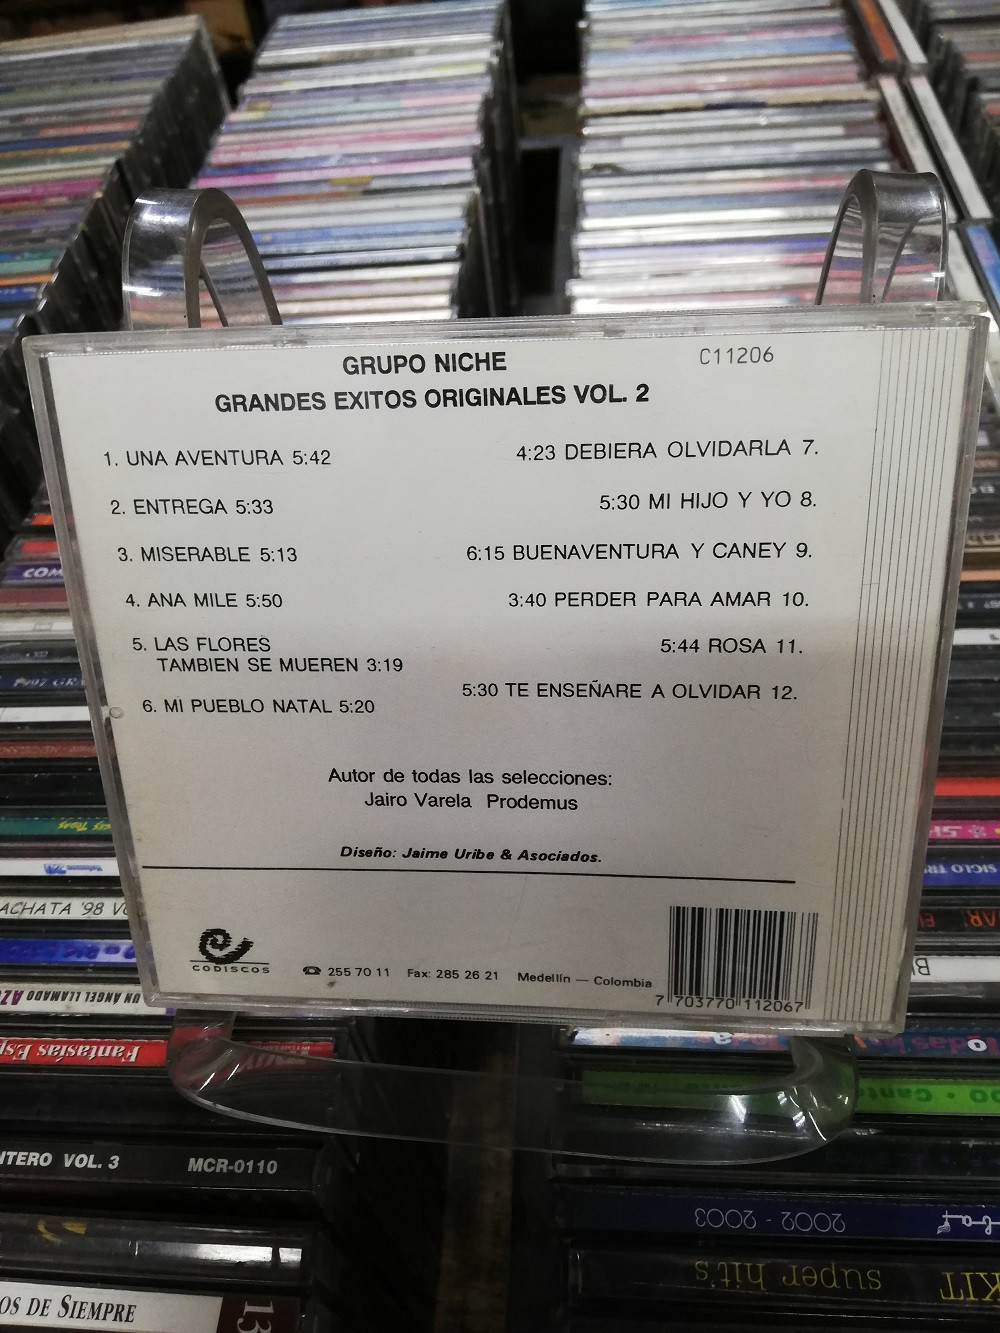 Imagen CD GRUPO NICHE - GRANDES EXITOS ORIGINALES VOL. 2 2